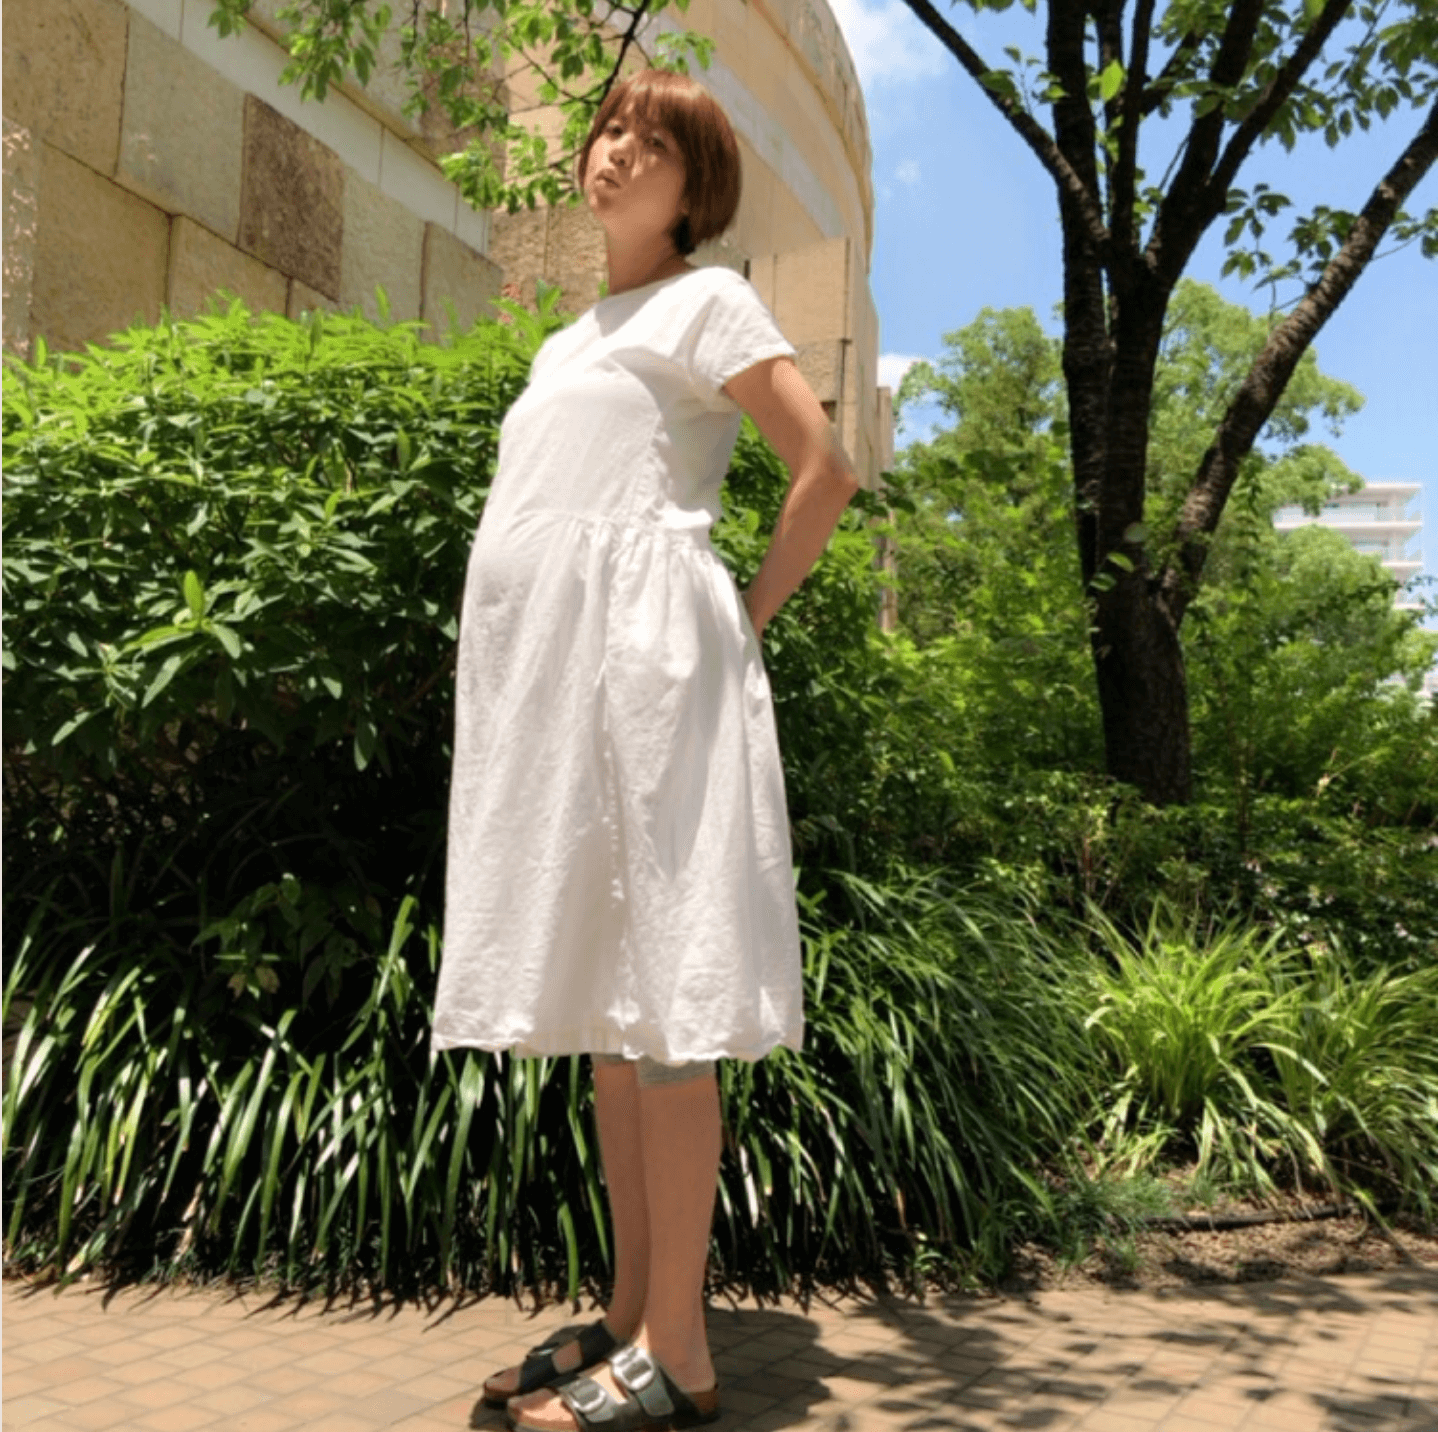 妊娠9ヶ月のhitomi、ふっくらお腹の白ワンピSHOT公開「カラダの動きがかなり大変に…」サムネイル画像!